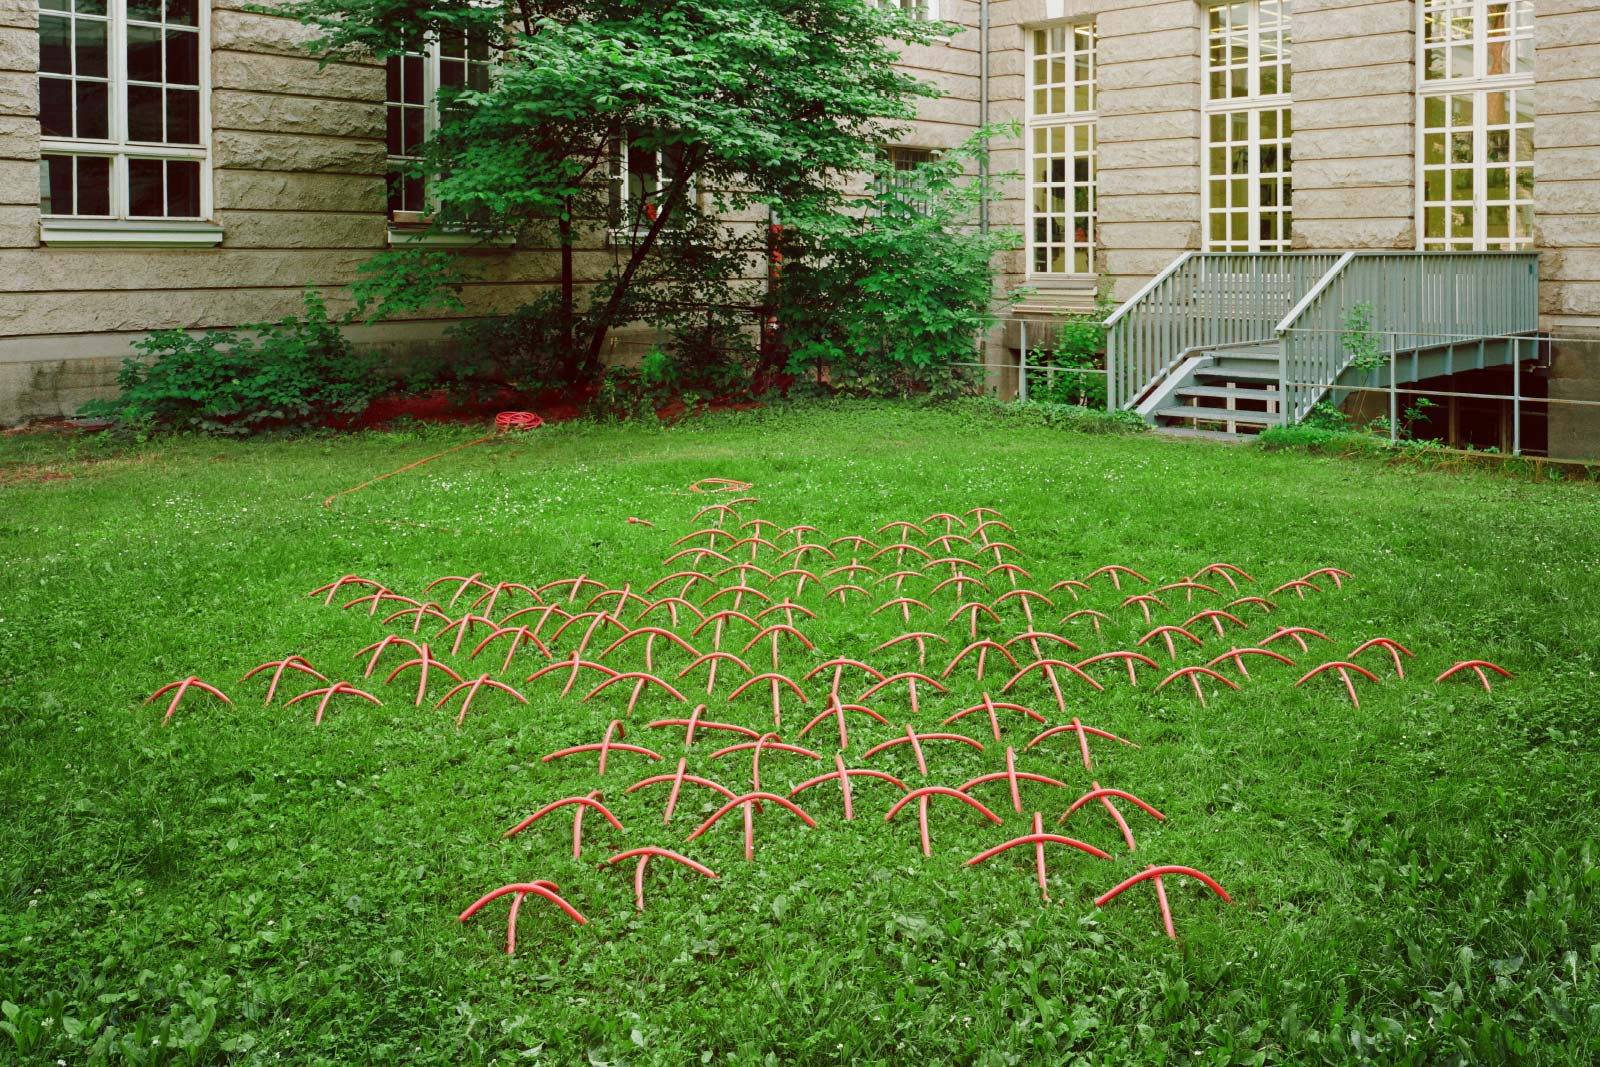 Kunst-Objekt von Josephine Riemann: ein durch den Rasen eines Gartens geführter Gartenschlauch, der einen Stern aus Kreuzstich-Stickmuster ergibt.